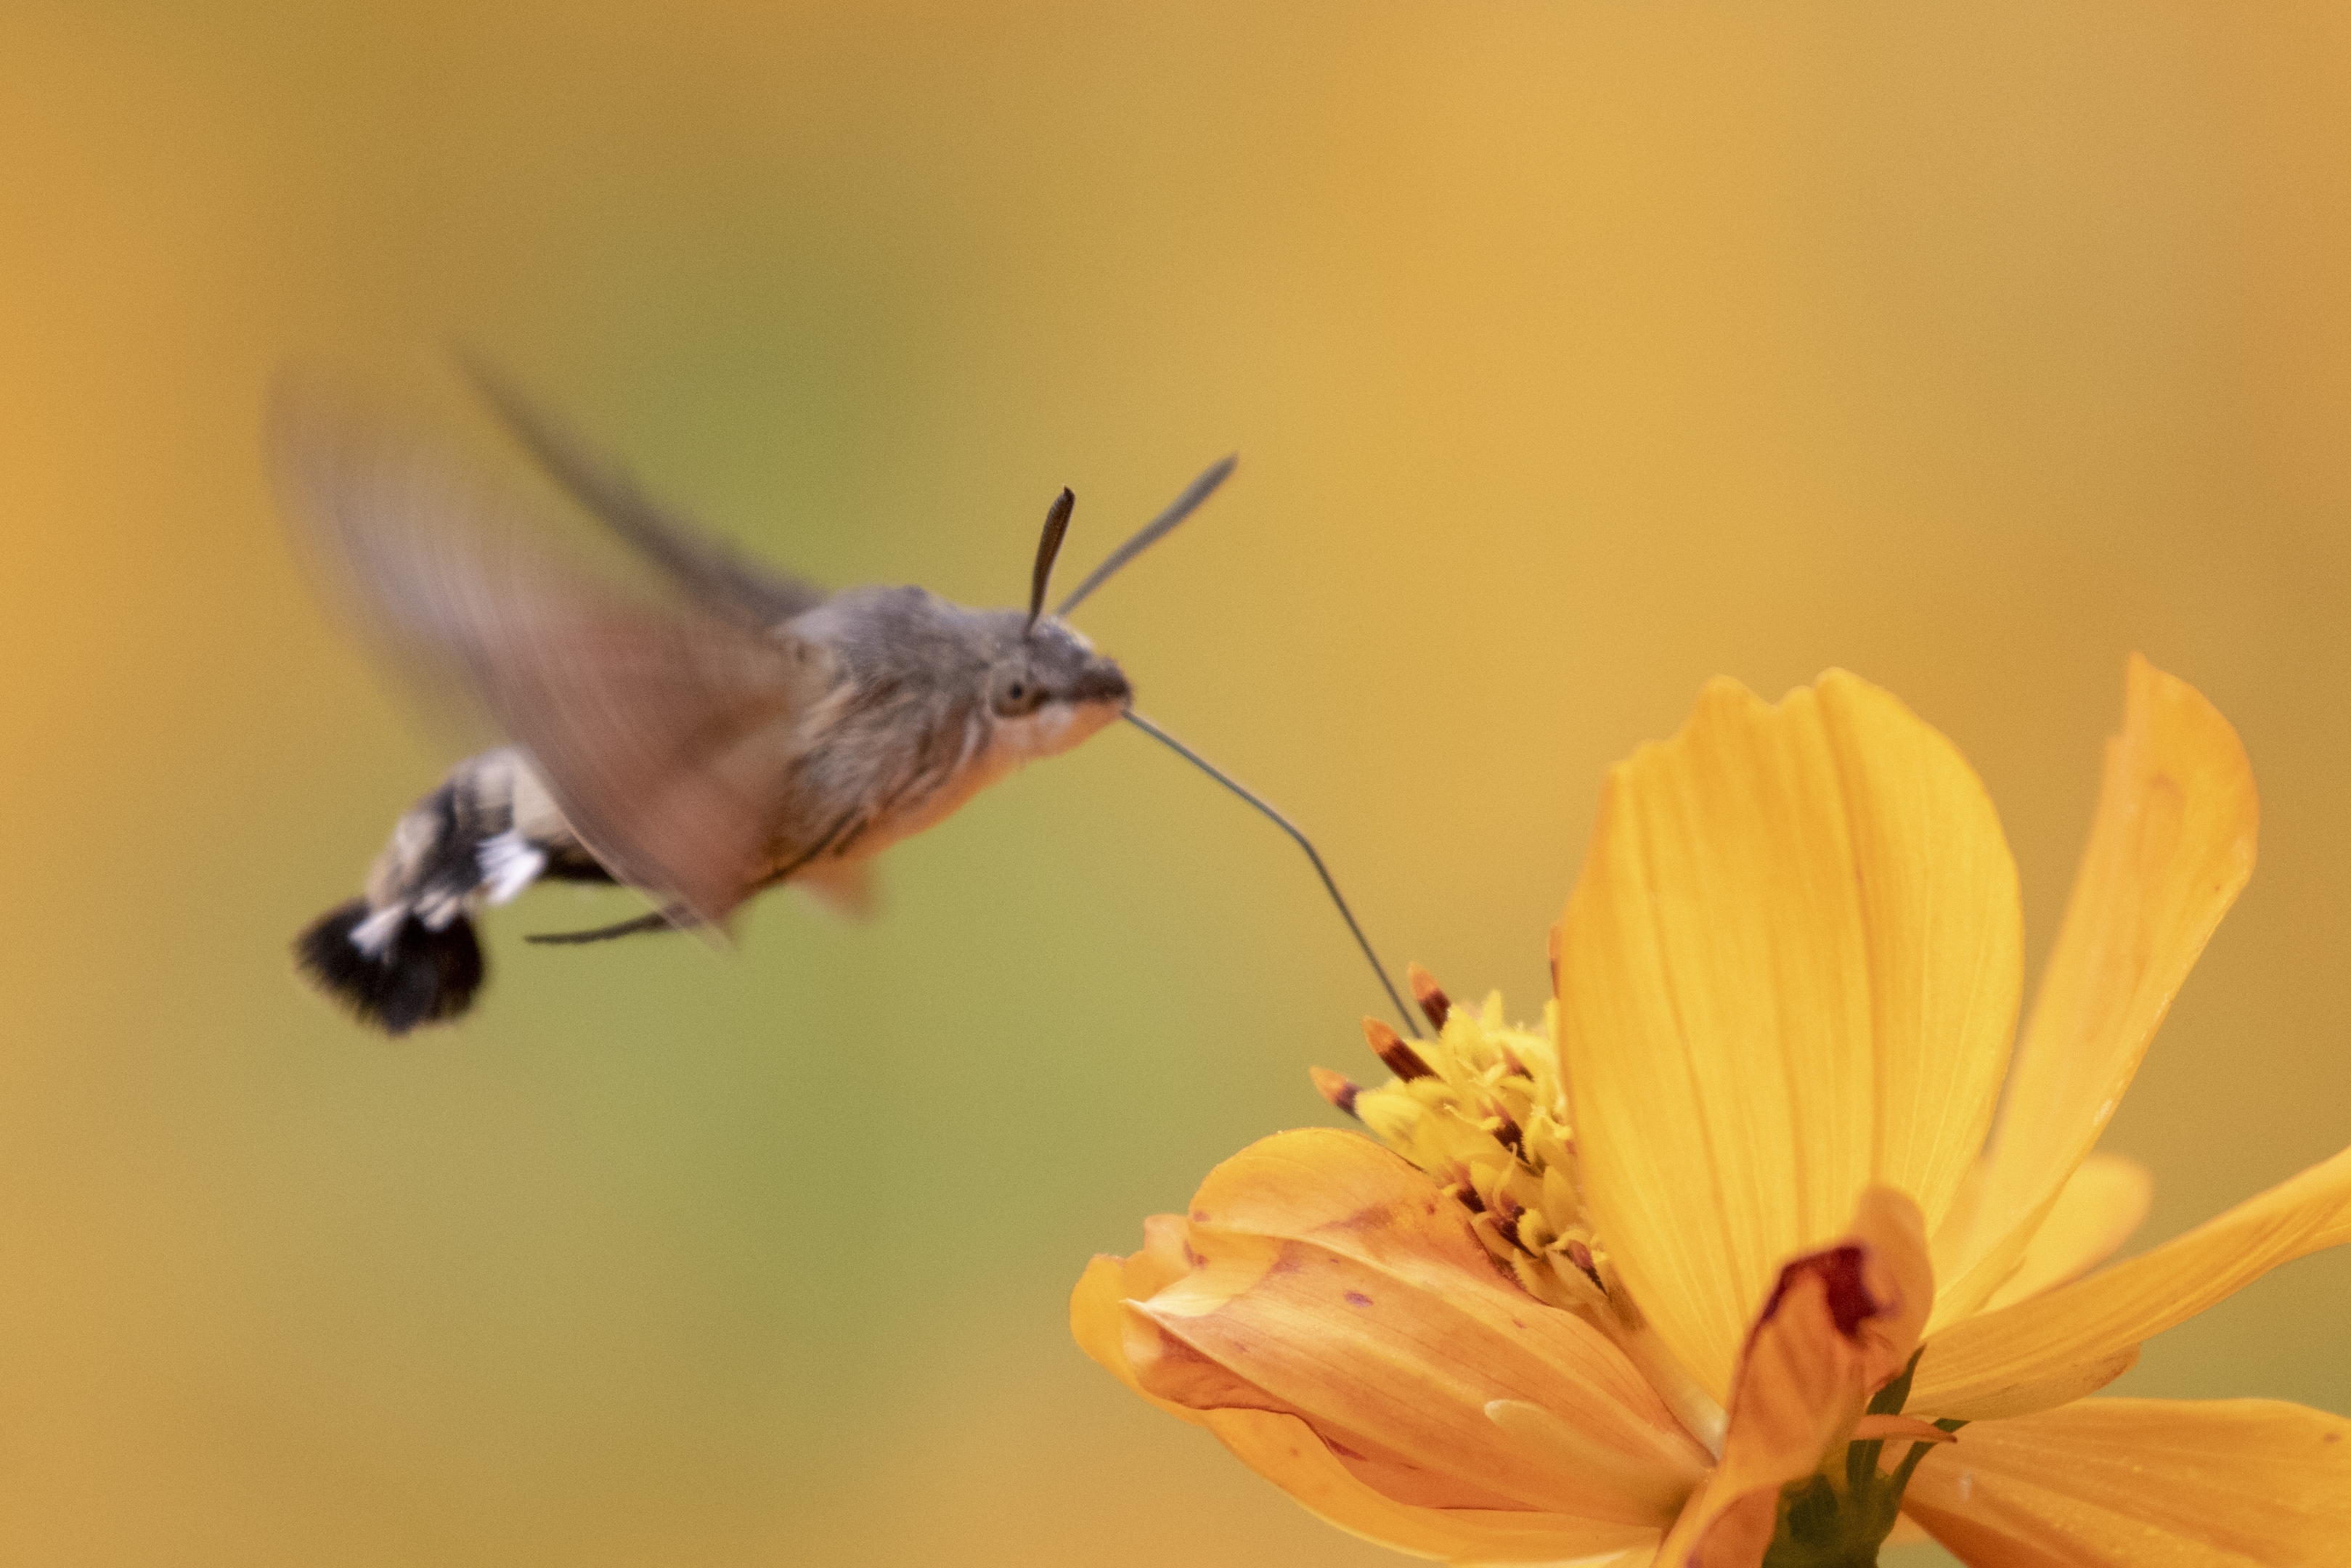 蜂鸟鹰蛾:被称为昆虫世界里的四不像,像蝶,和蝶一样白天活动